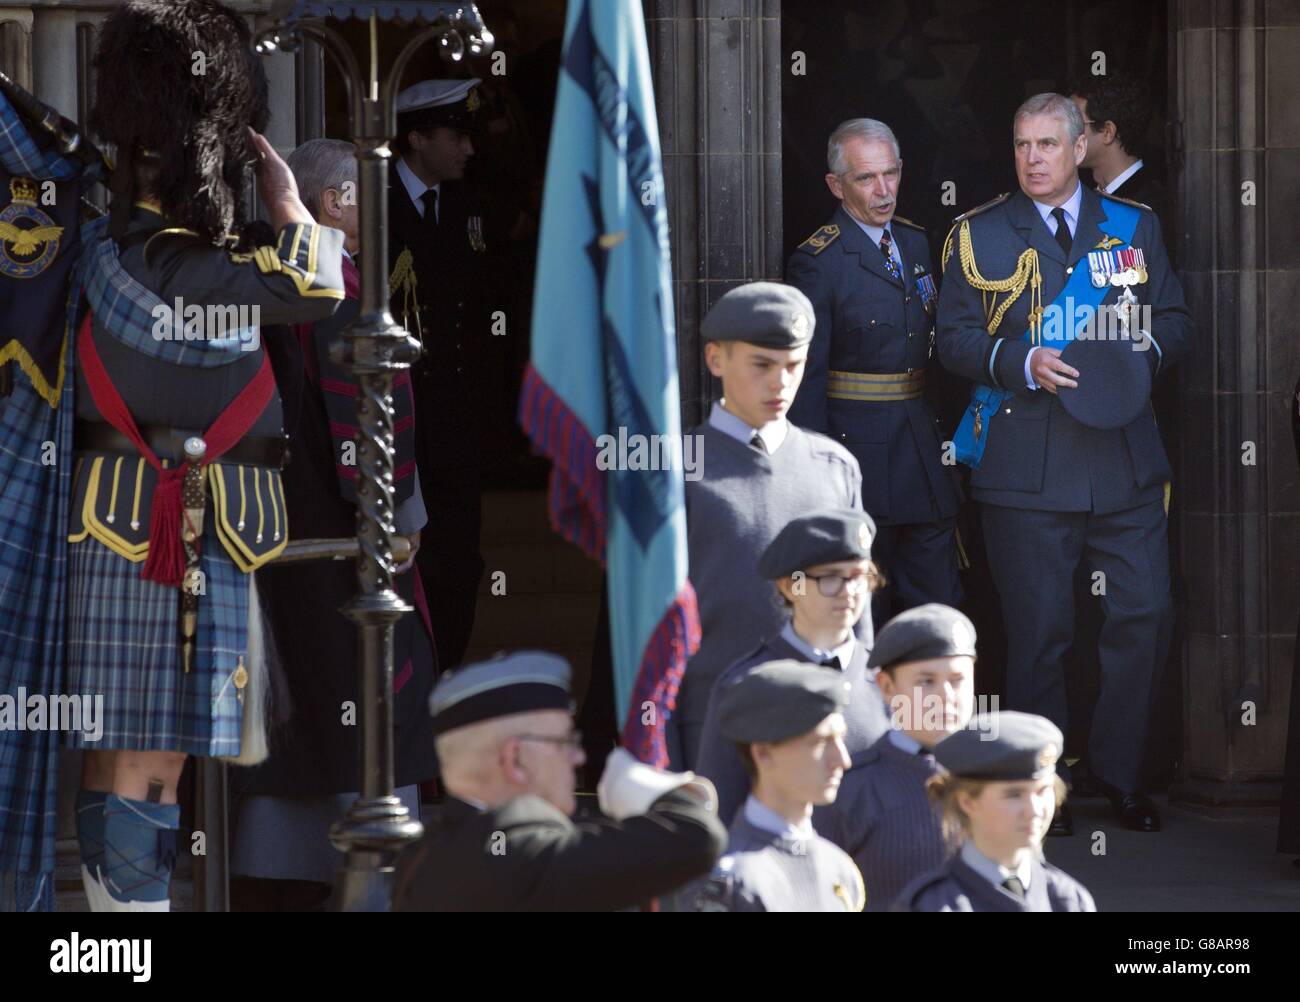 Le duc d'York (à droite) et le maréchal de l'air Sir Dusty Miller KBE (deuxième à droite) quittent le service du 75e anniversaire de la bataille d'Angleterre tenu par la Royal Air Forces Association à la cathédrale St Giles à Édimbourg, en Écosse. Banque D'Images